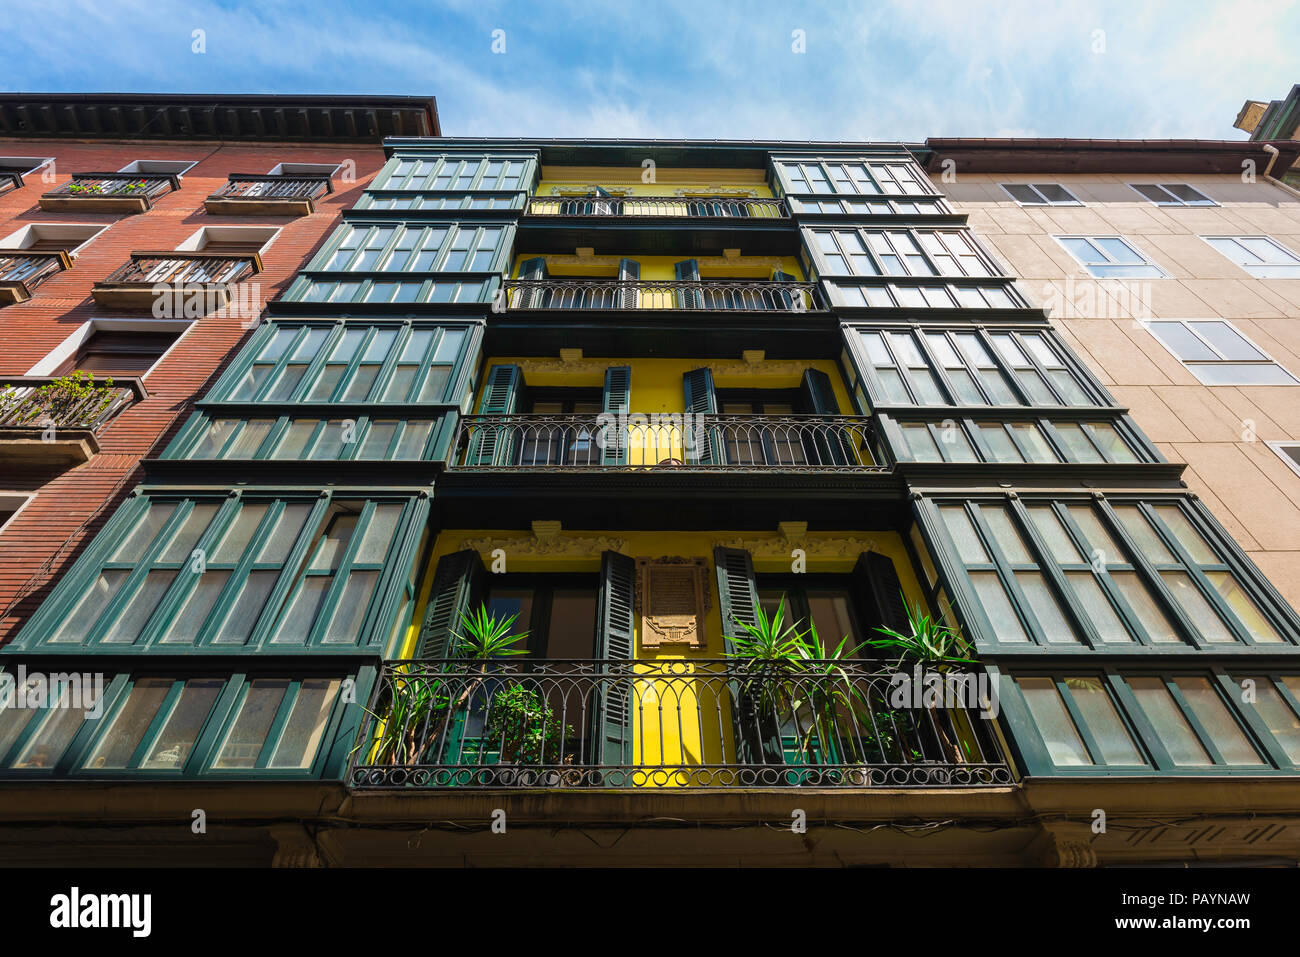 Bilbao Gebäude, Ansicht von der Straße aus einer typischen baskischen Stil Apartment Gebäude in der Altstadt (Casco Viejo) Bereich von Bilbao, Nordspanien. Stockfoto